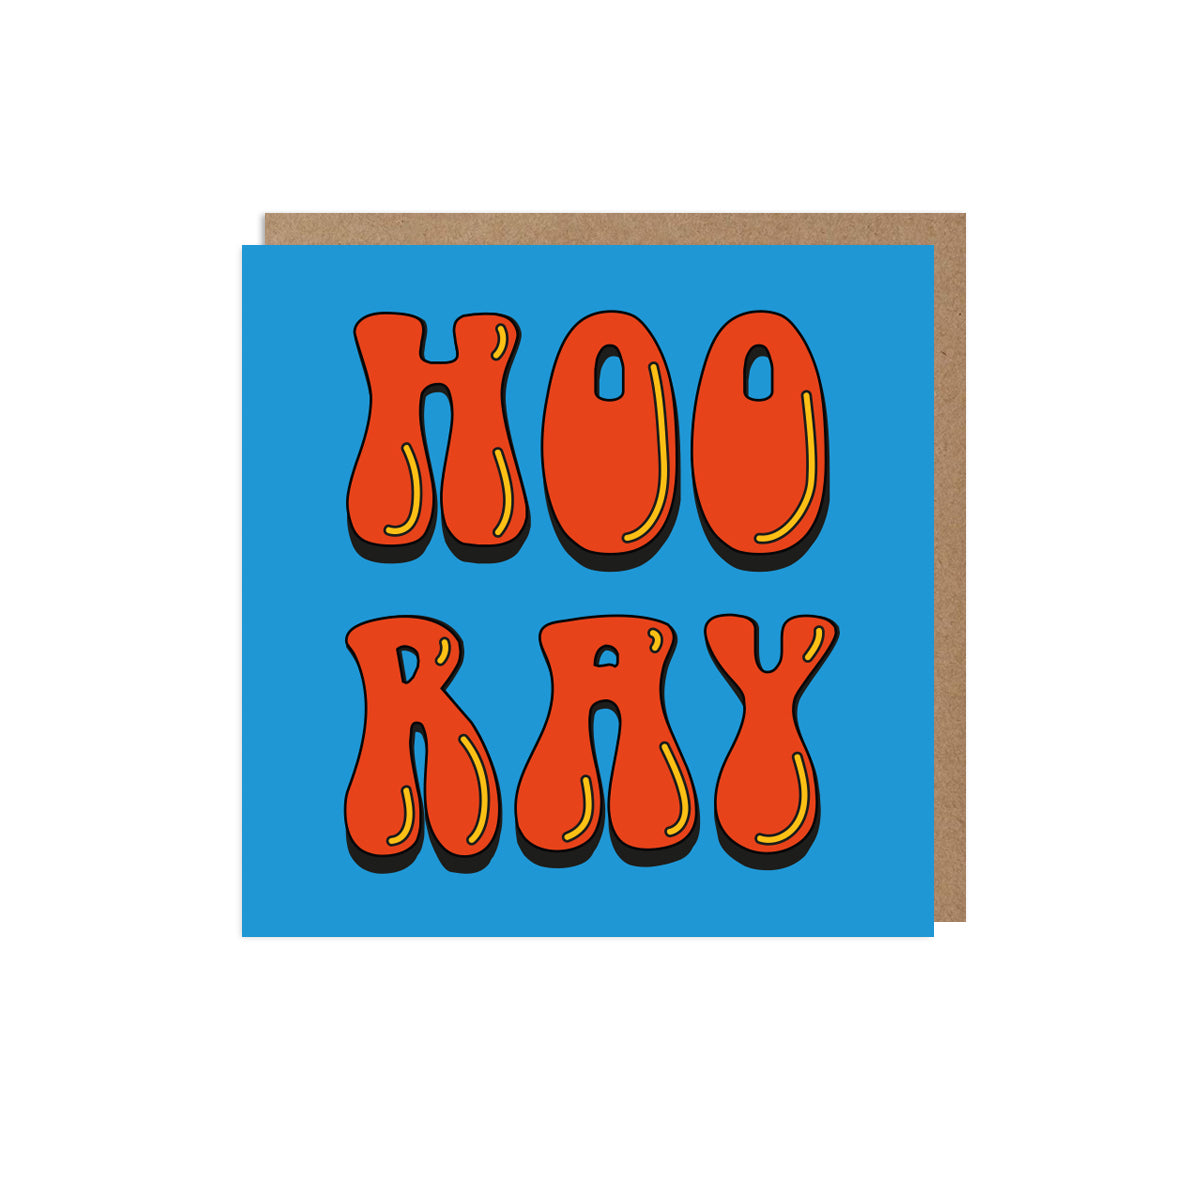 Hoo Ray Card